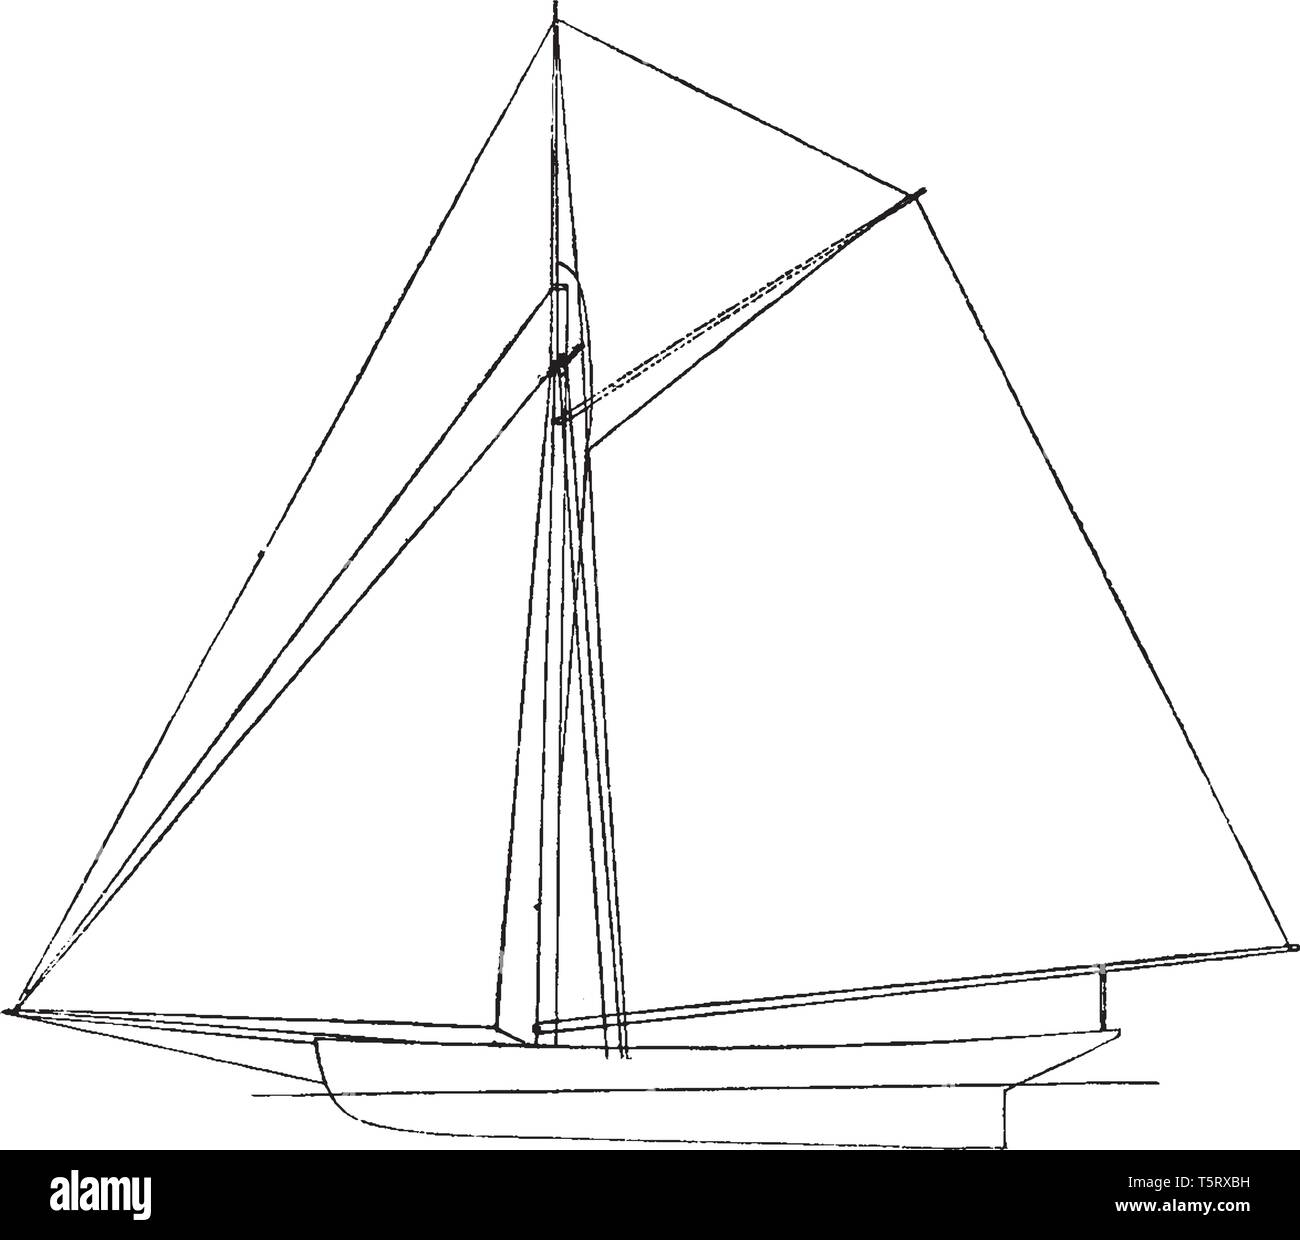 Amerikanische Sloop ist ein Segelboot mit einem Mast und einem vorderen und hinteren rig, vintage Strichzeichnung oder Gravur Abbildung. Stock Vektor